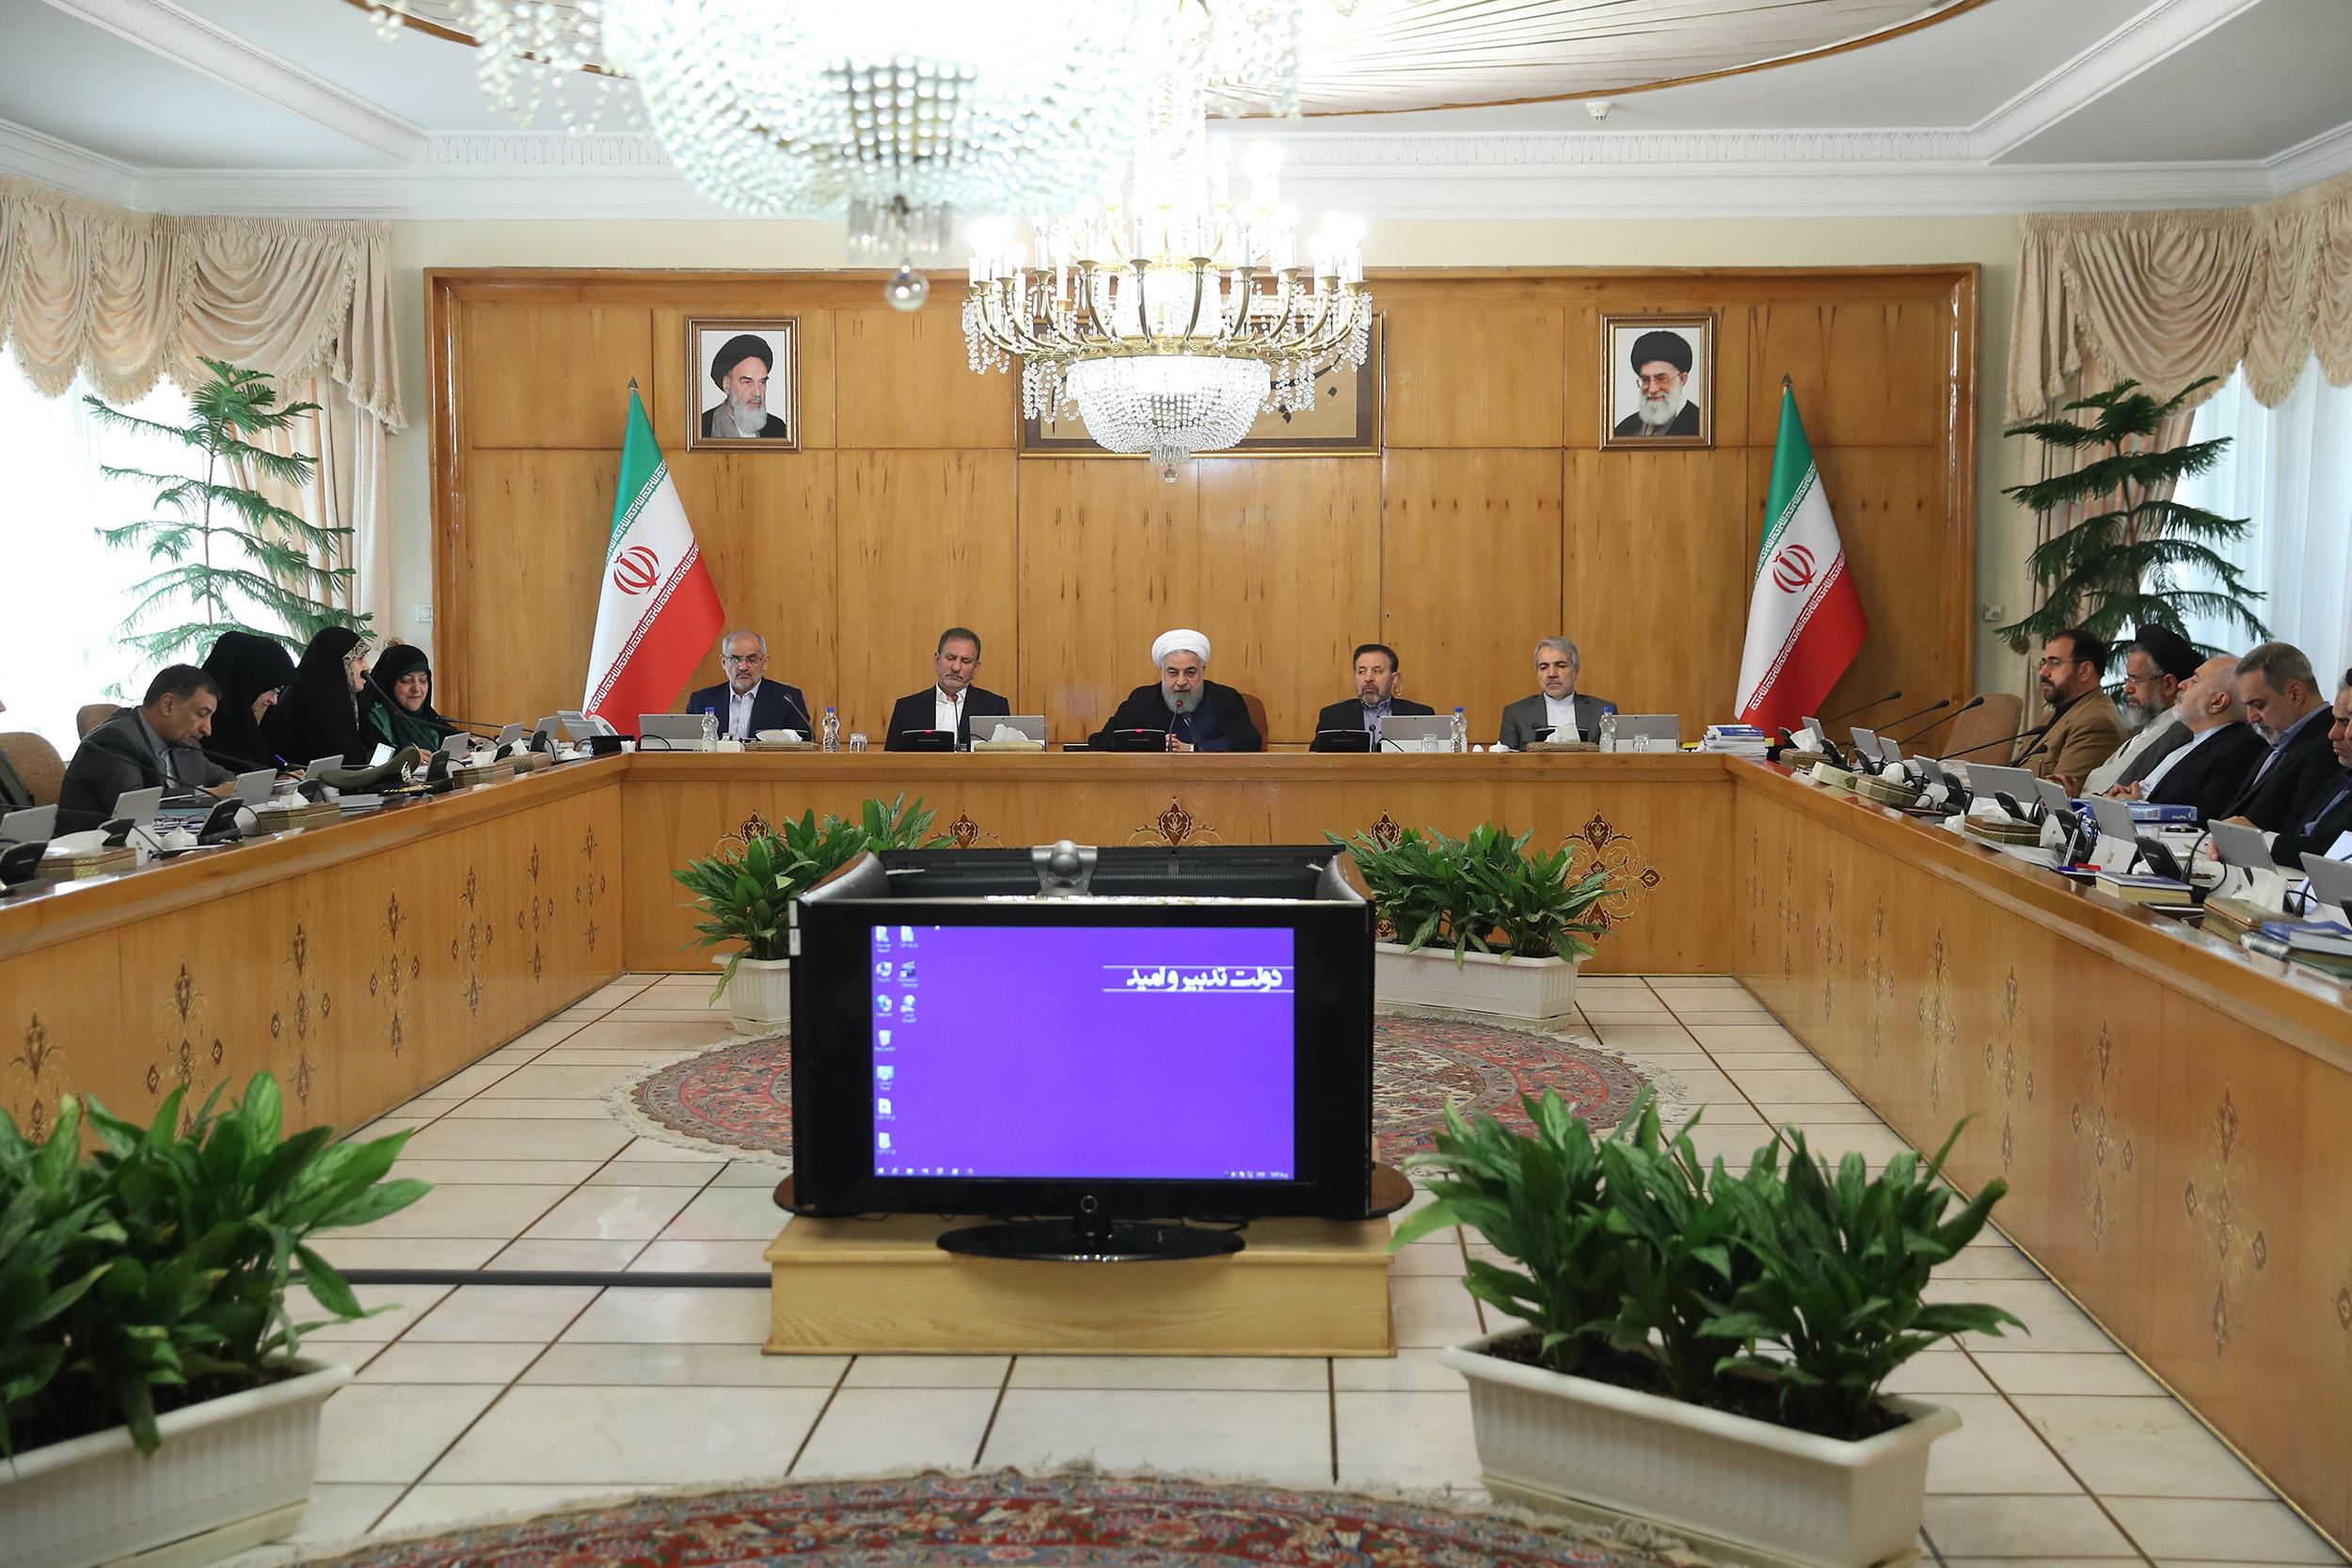 الرئيس روحاني: مراسم مقارعة الاستكبار مؤشر لالتفاف الشعب حول الثورة 